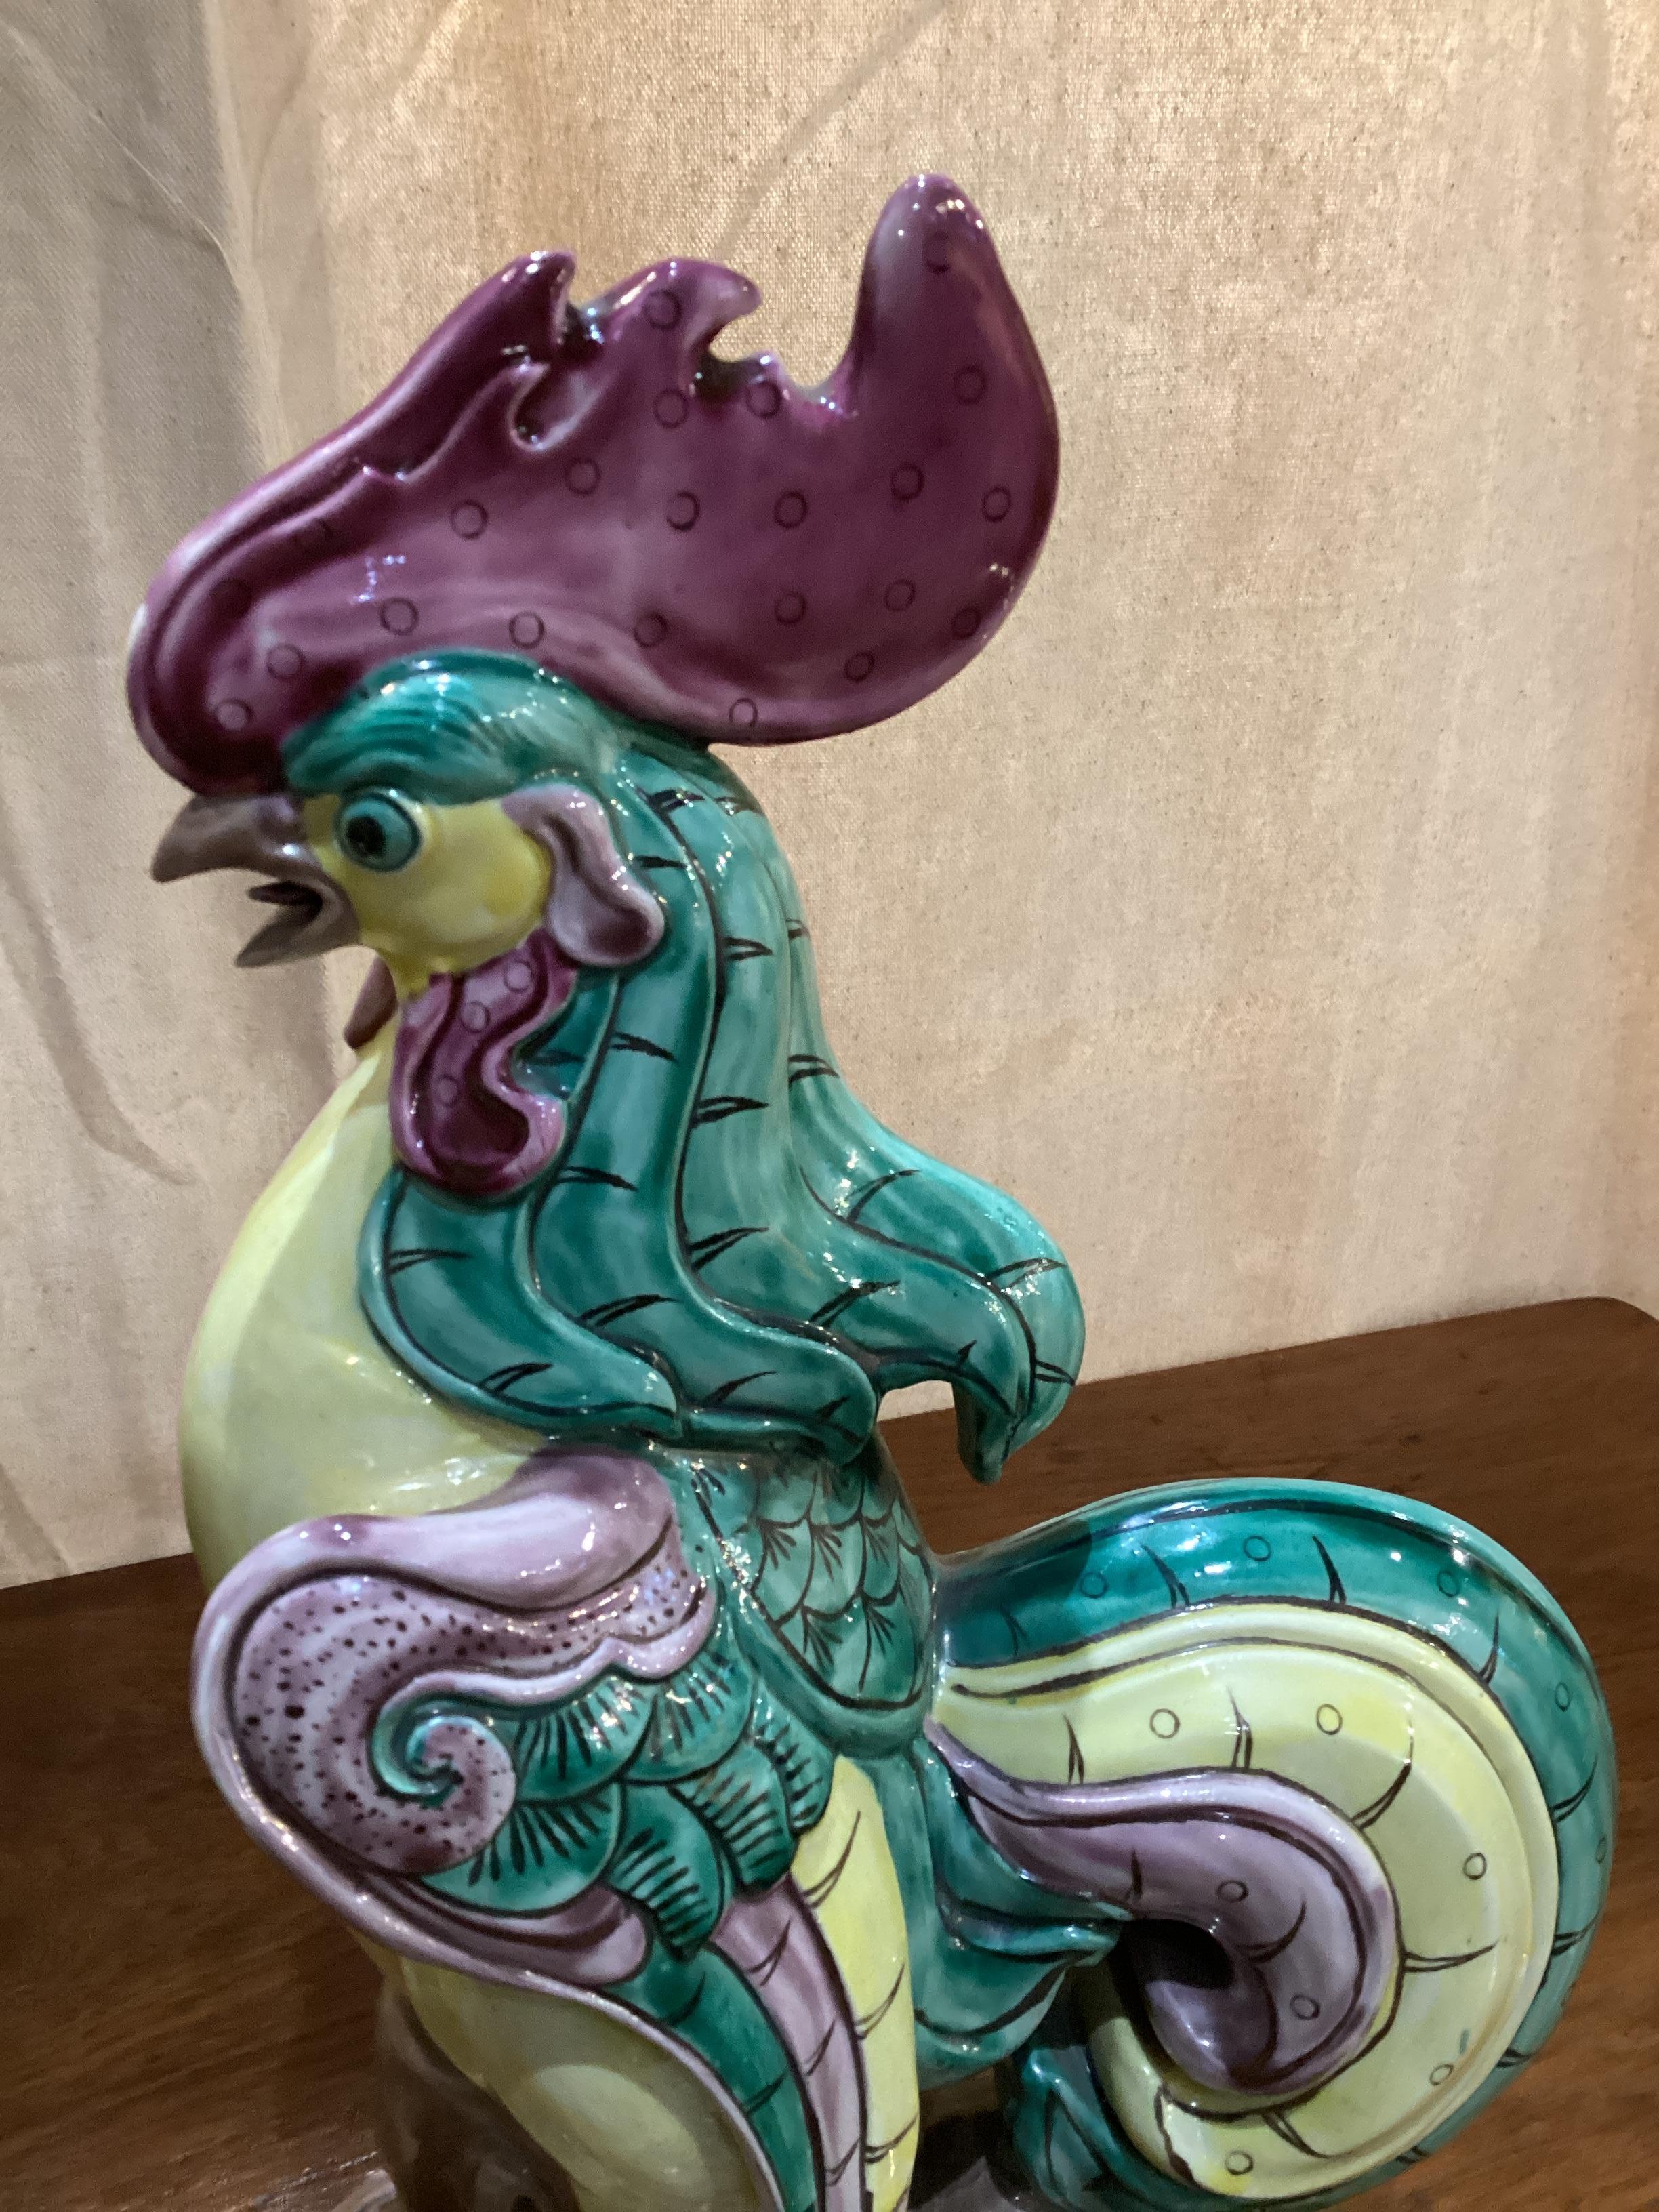 Paire de coqs en céramique chinoise aux couleurs vives. Des coqs chanteurs perchés sur un tronc, dans un plumage très coloré de jaune, de vert et de violet.